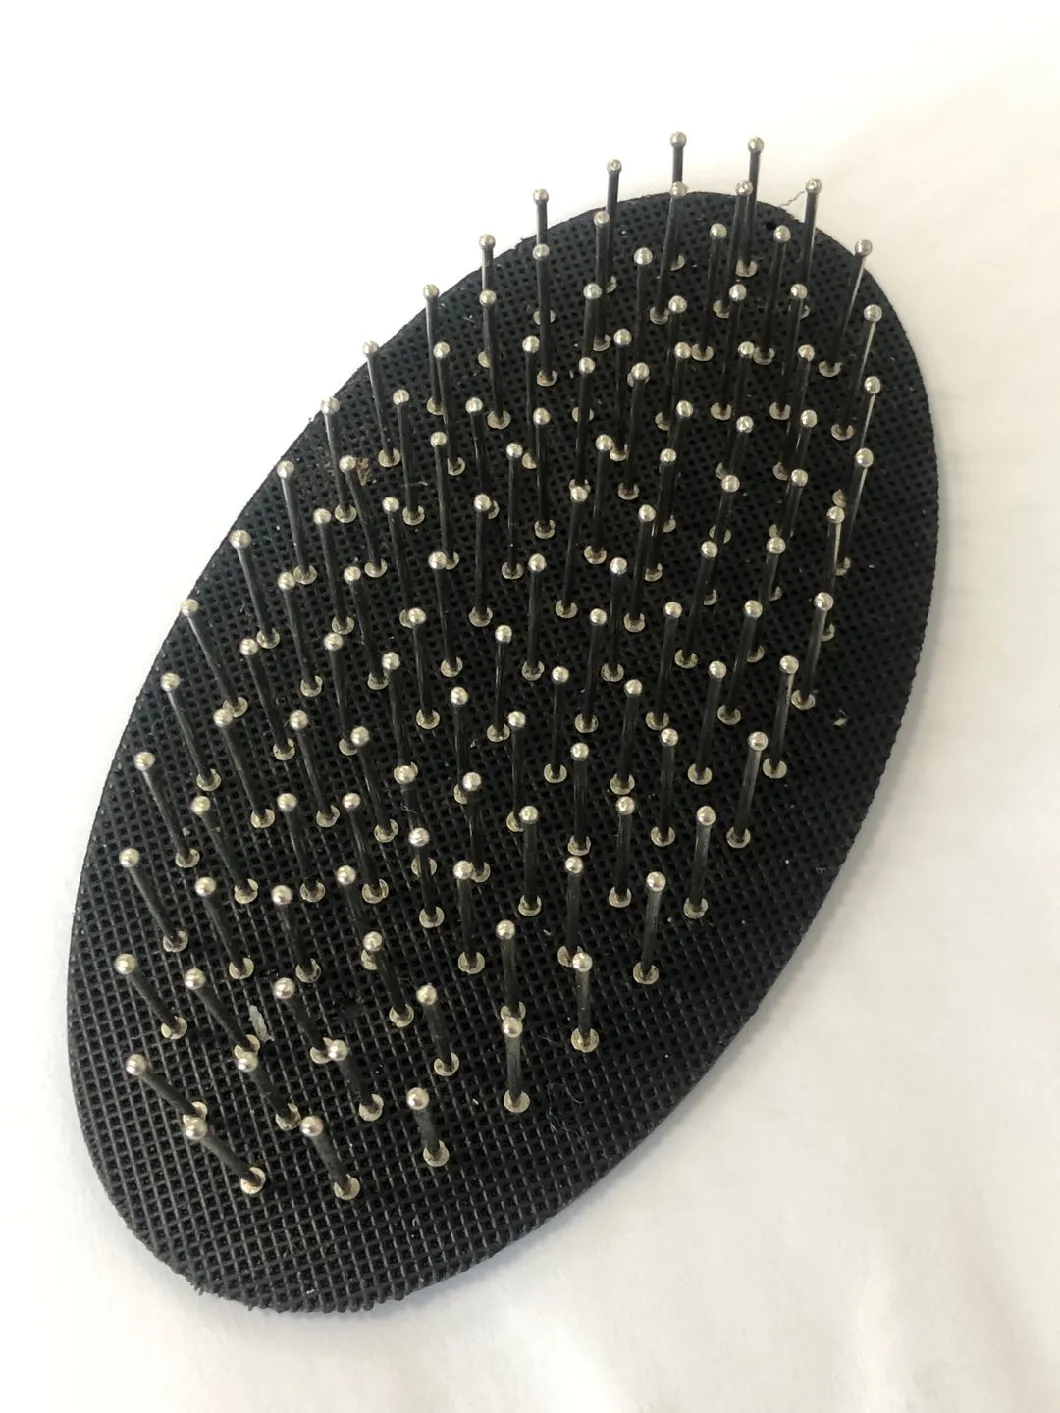 Cushion for Paddle Hair Brush